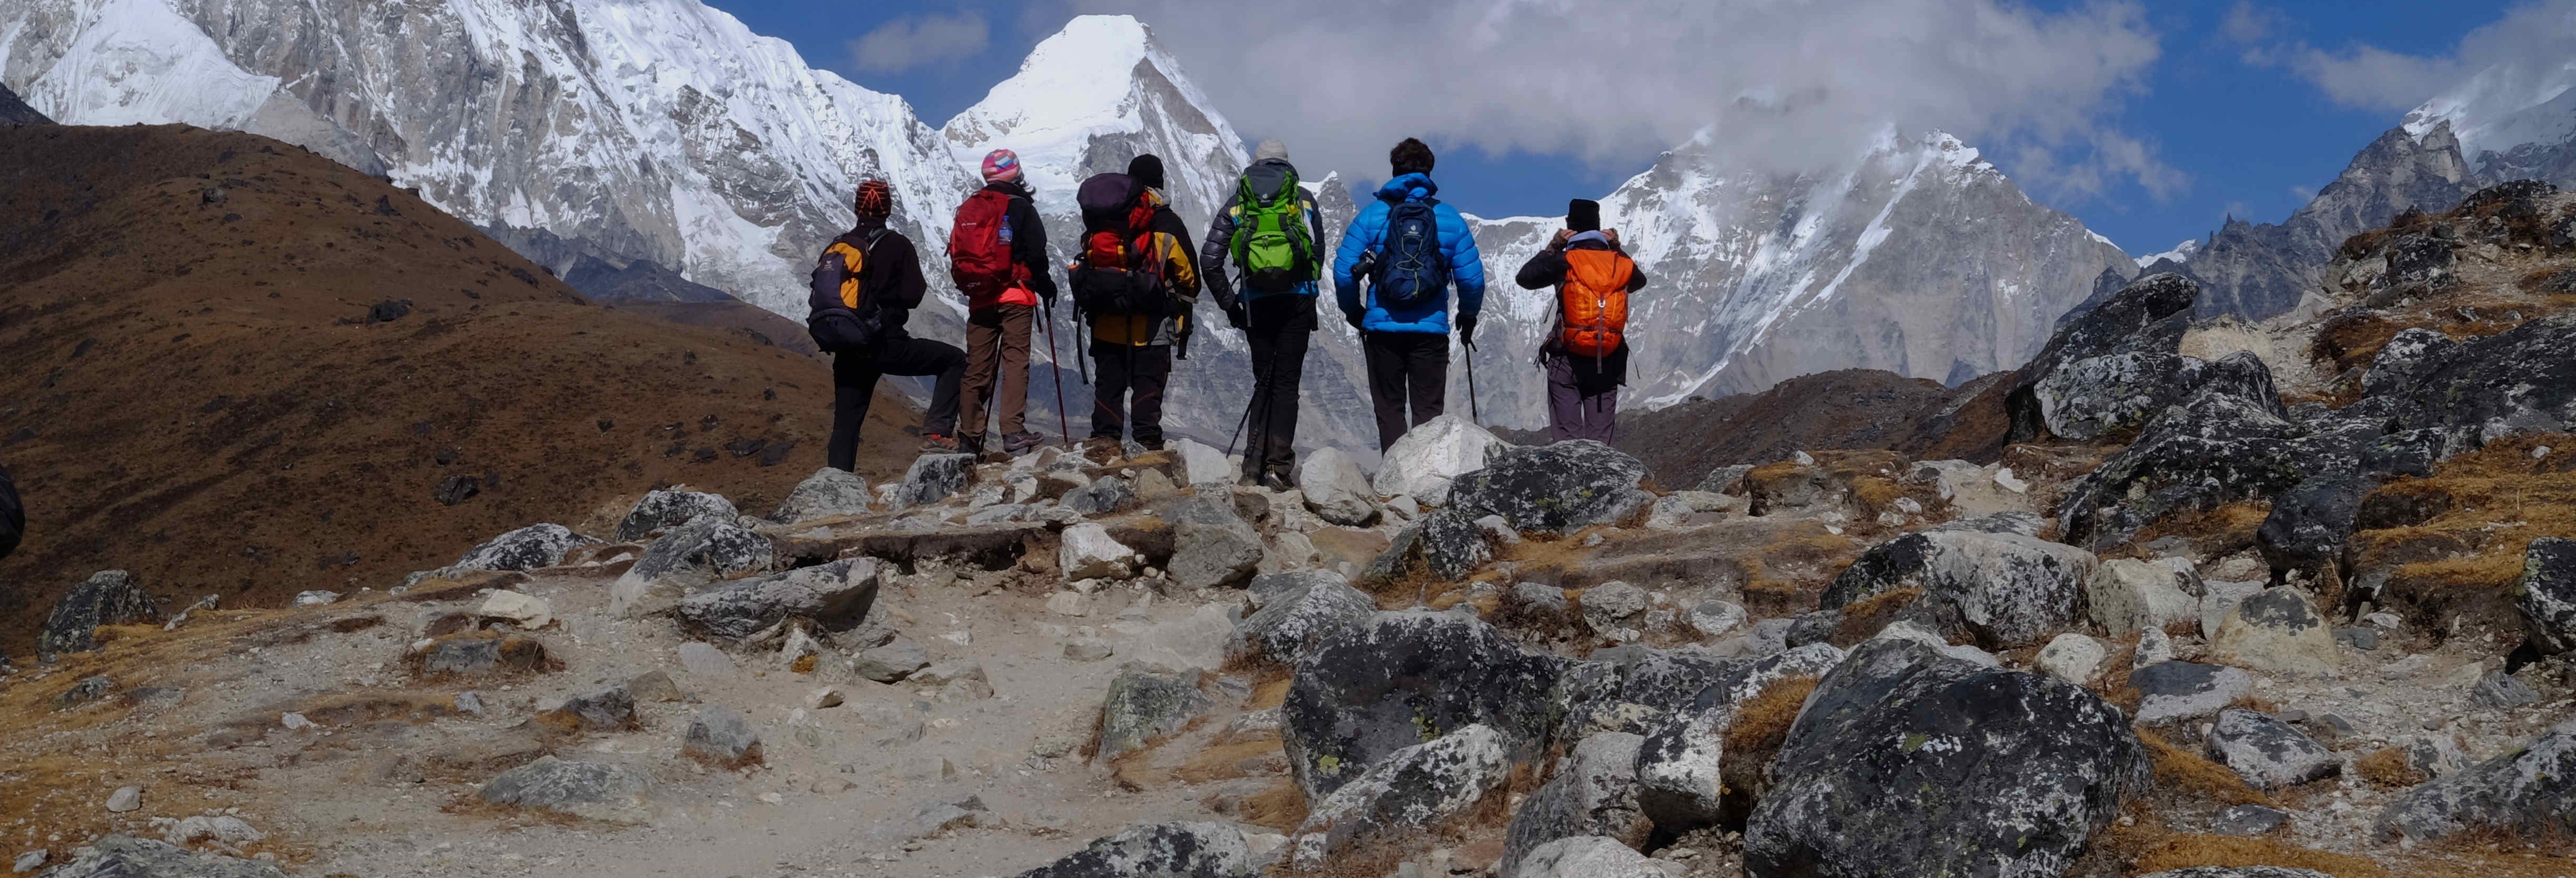 Trilha de 9 dias ao acampamento base do Everest